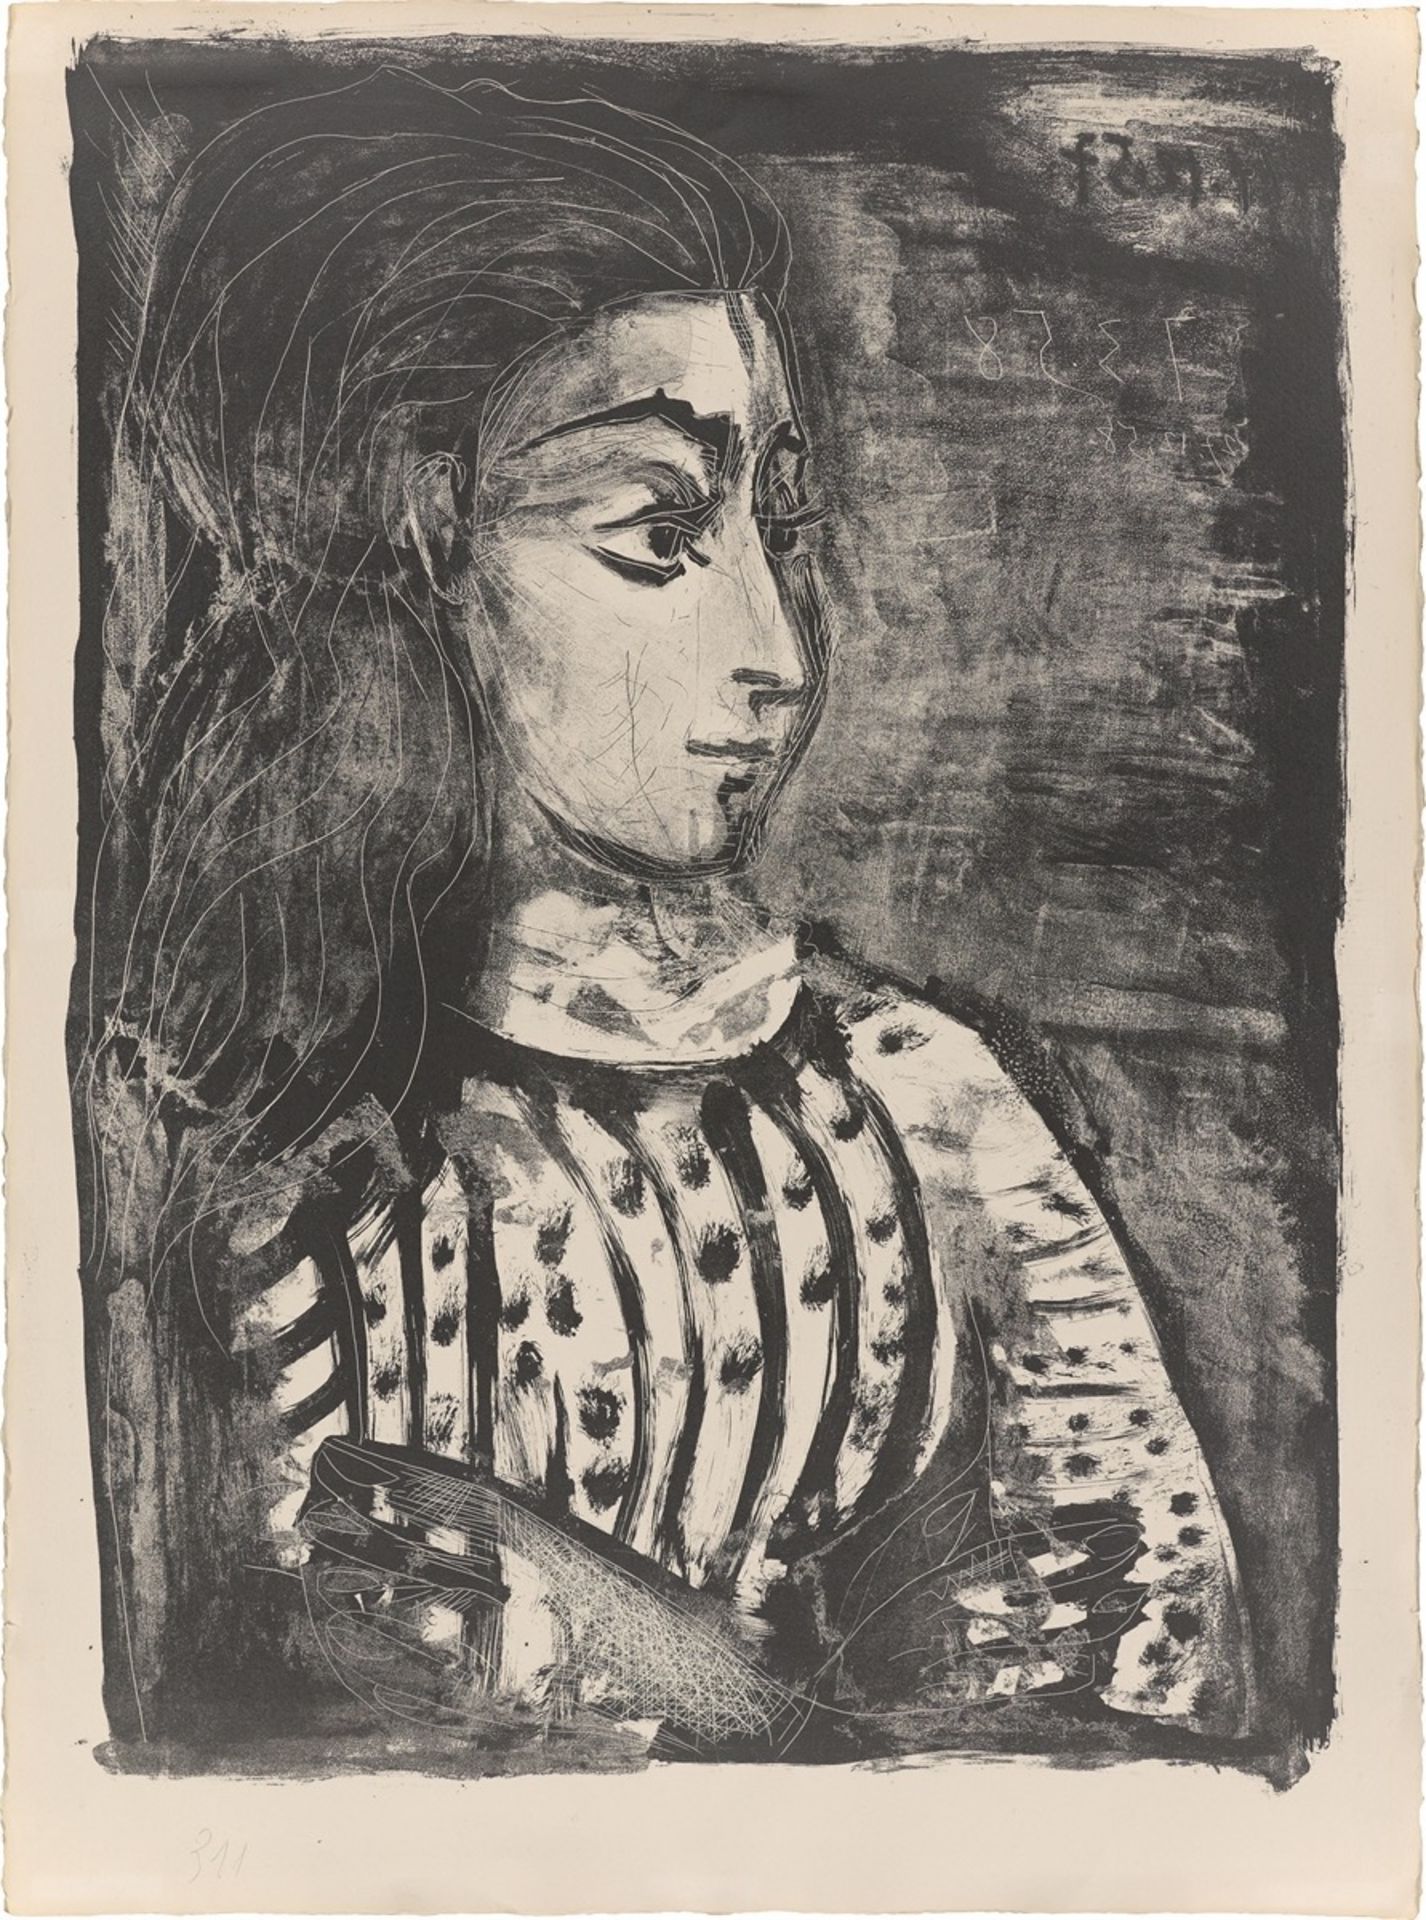 Pablo Picasso. ”Jacqueline de profil”. 1958